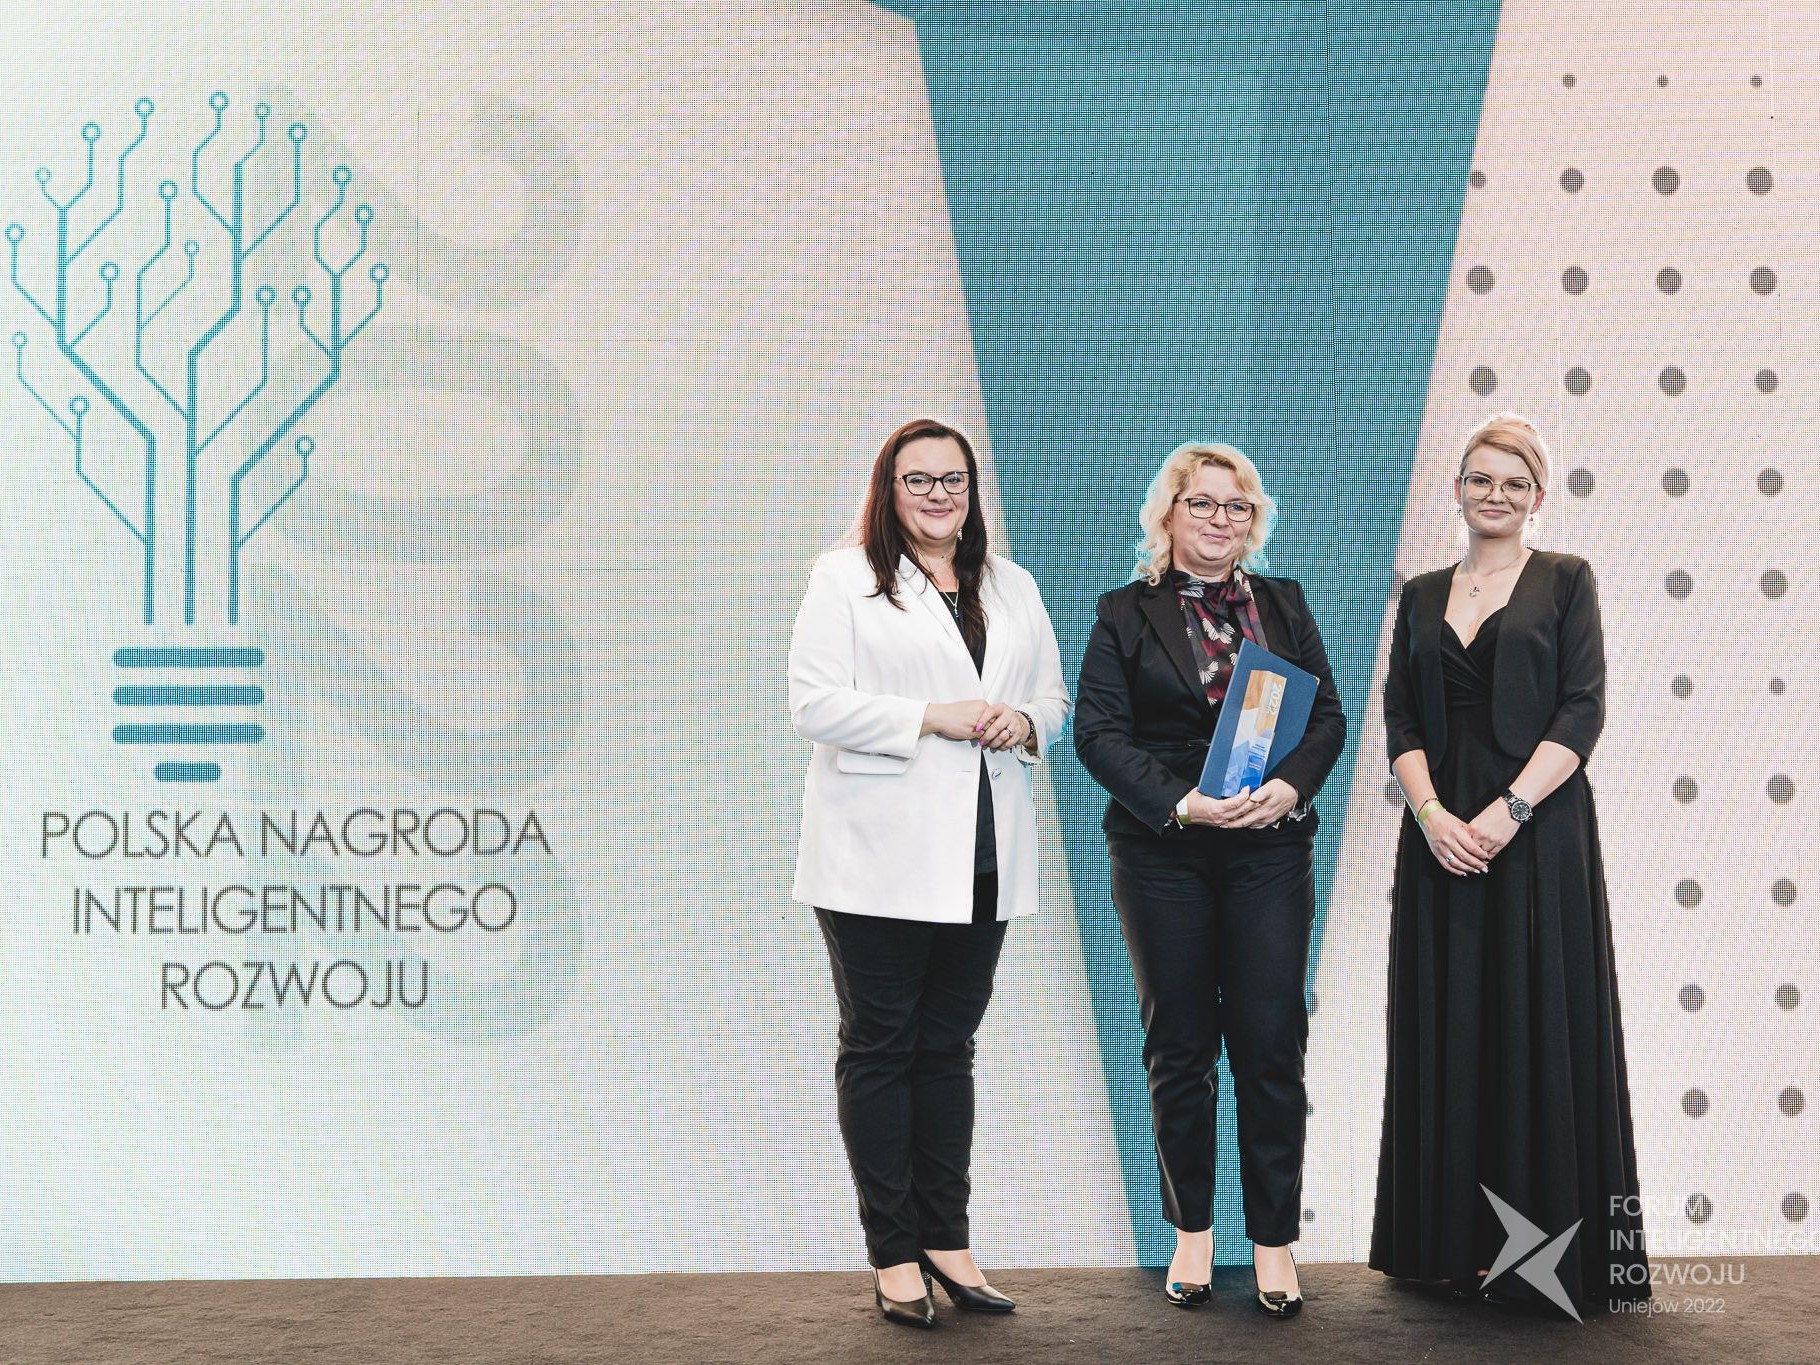 Anna Mlost - Zastępca Dyrektora Departamentu Rozwoju Regionu wraz z dwiema kobietami stoi na scenie Forum Inteligentnego rozwoju po odebraniu nagrody